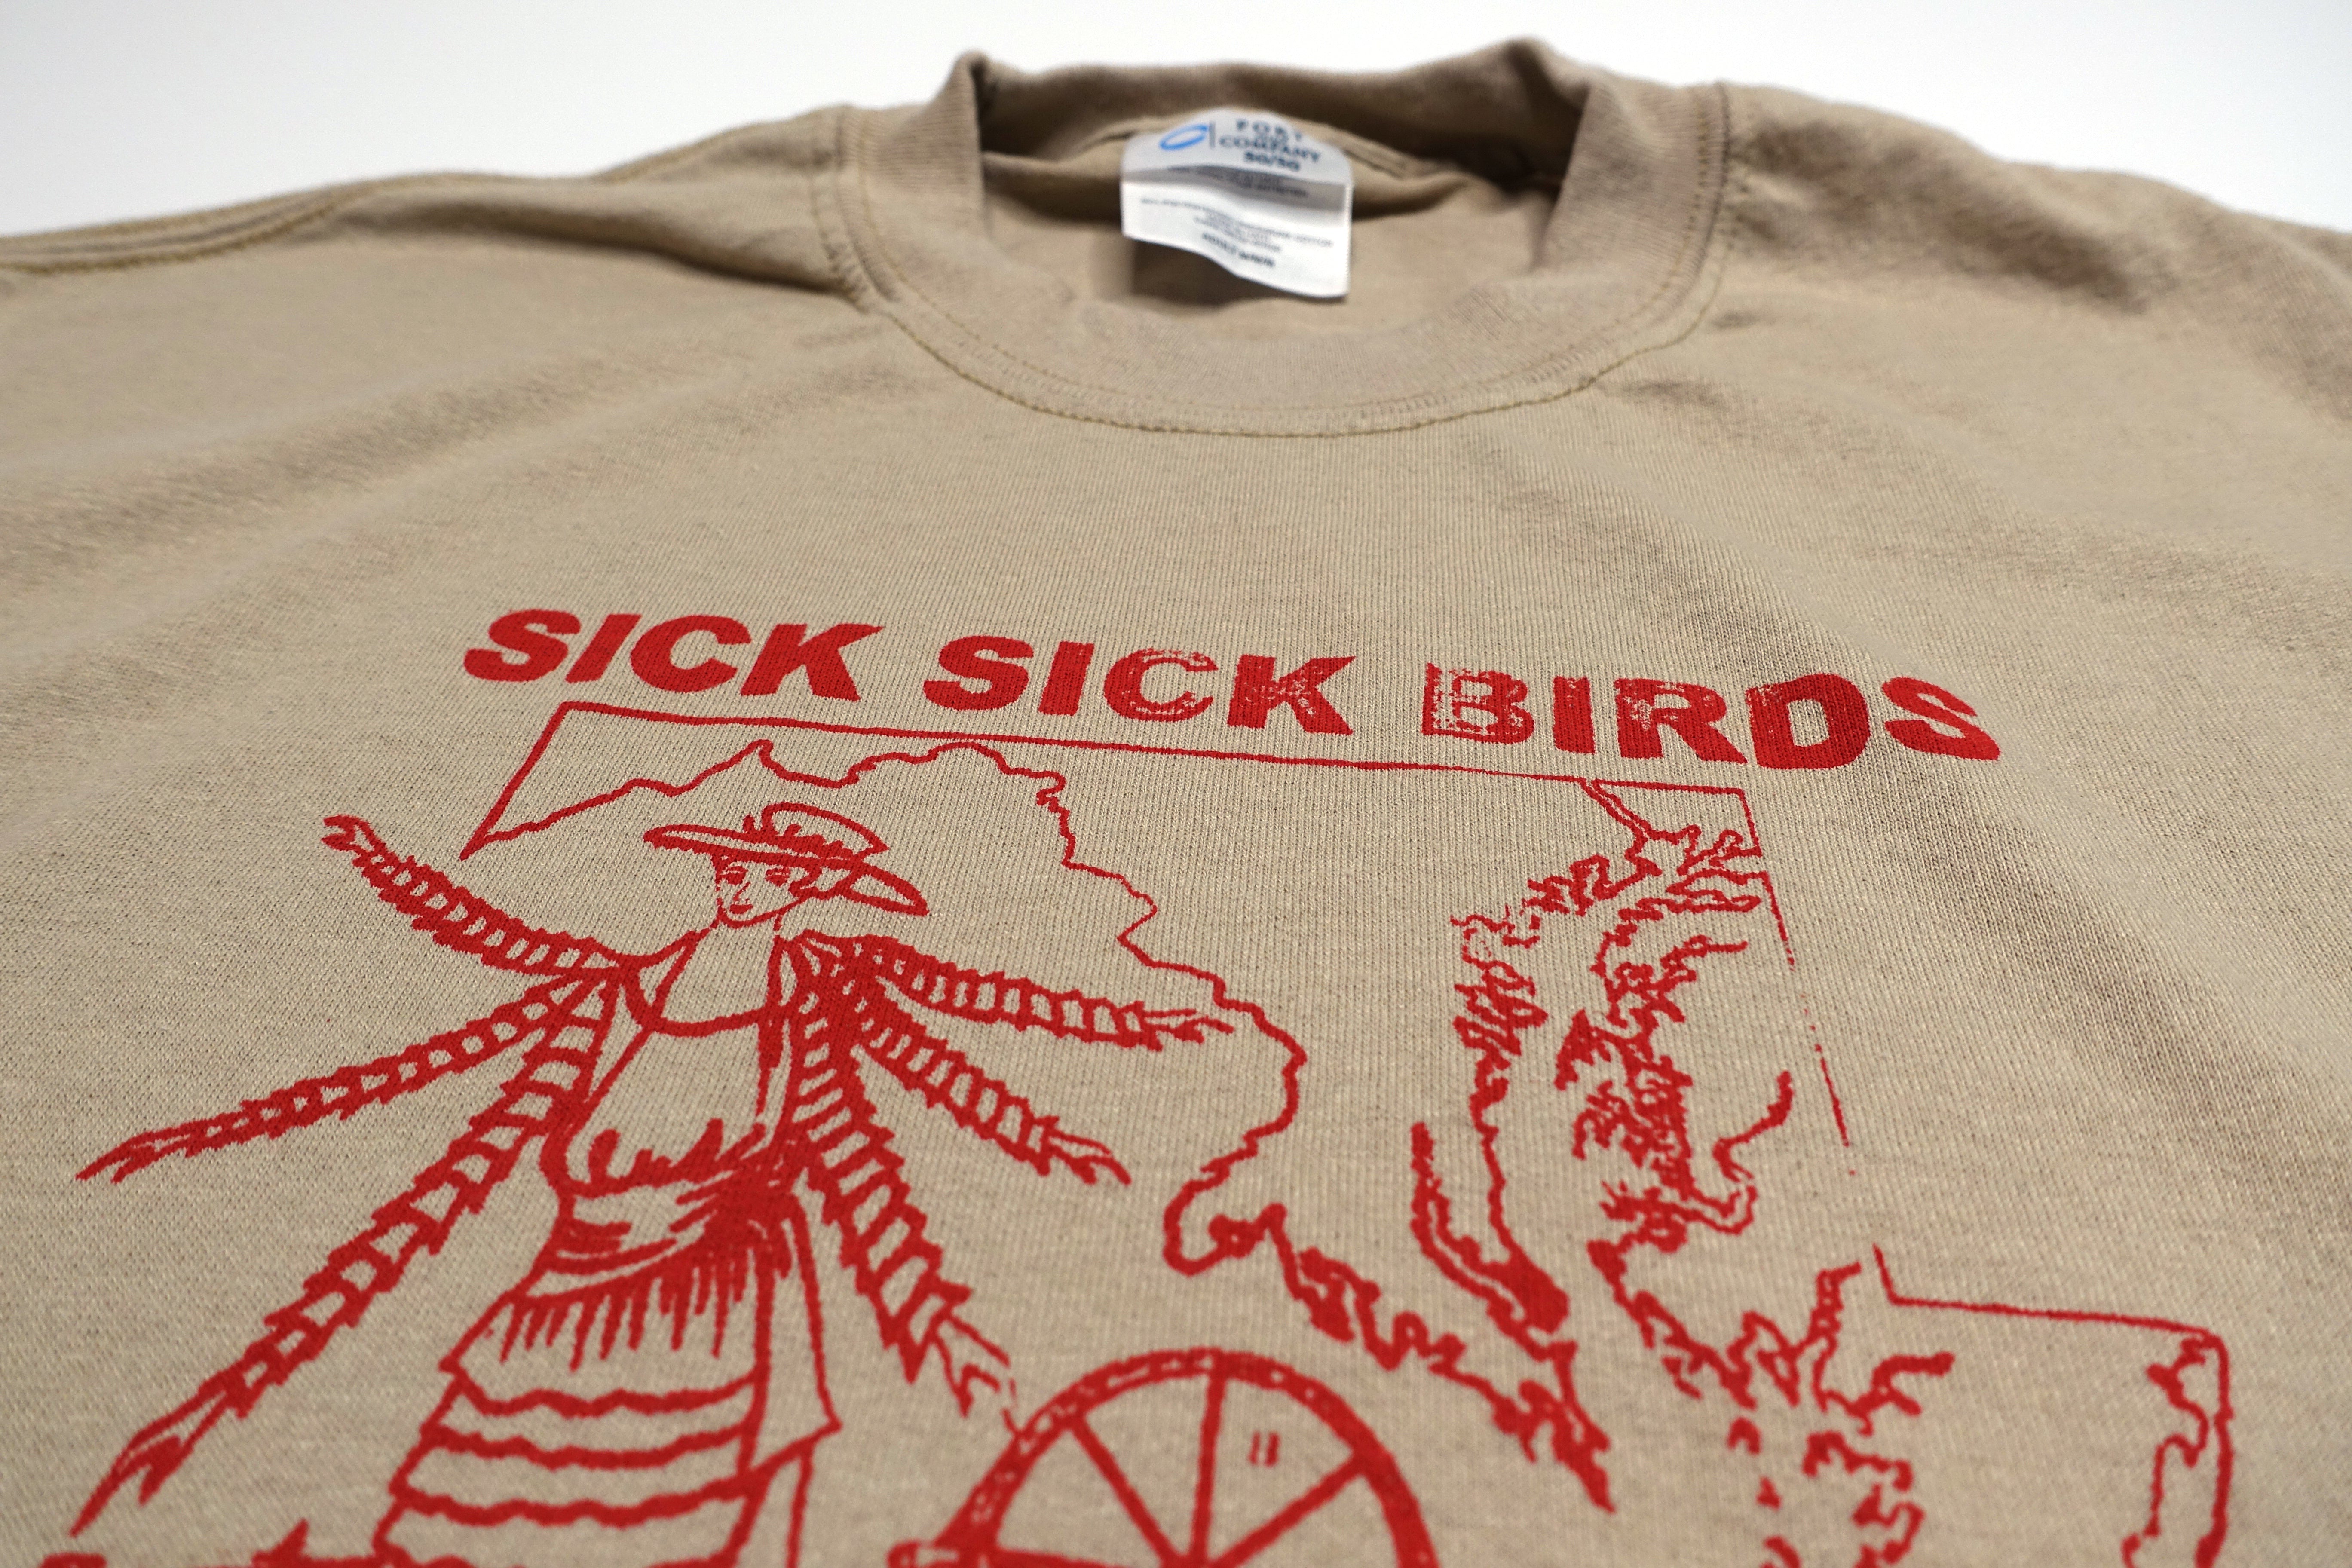 Sick Sick Birds ‎– Spinning Jenny Tour Shirt Size Medium